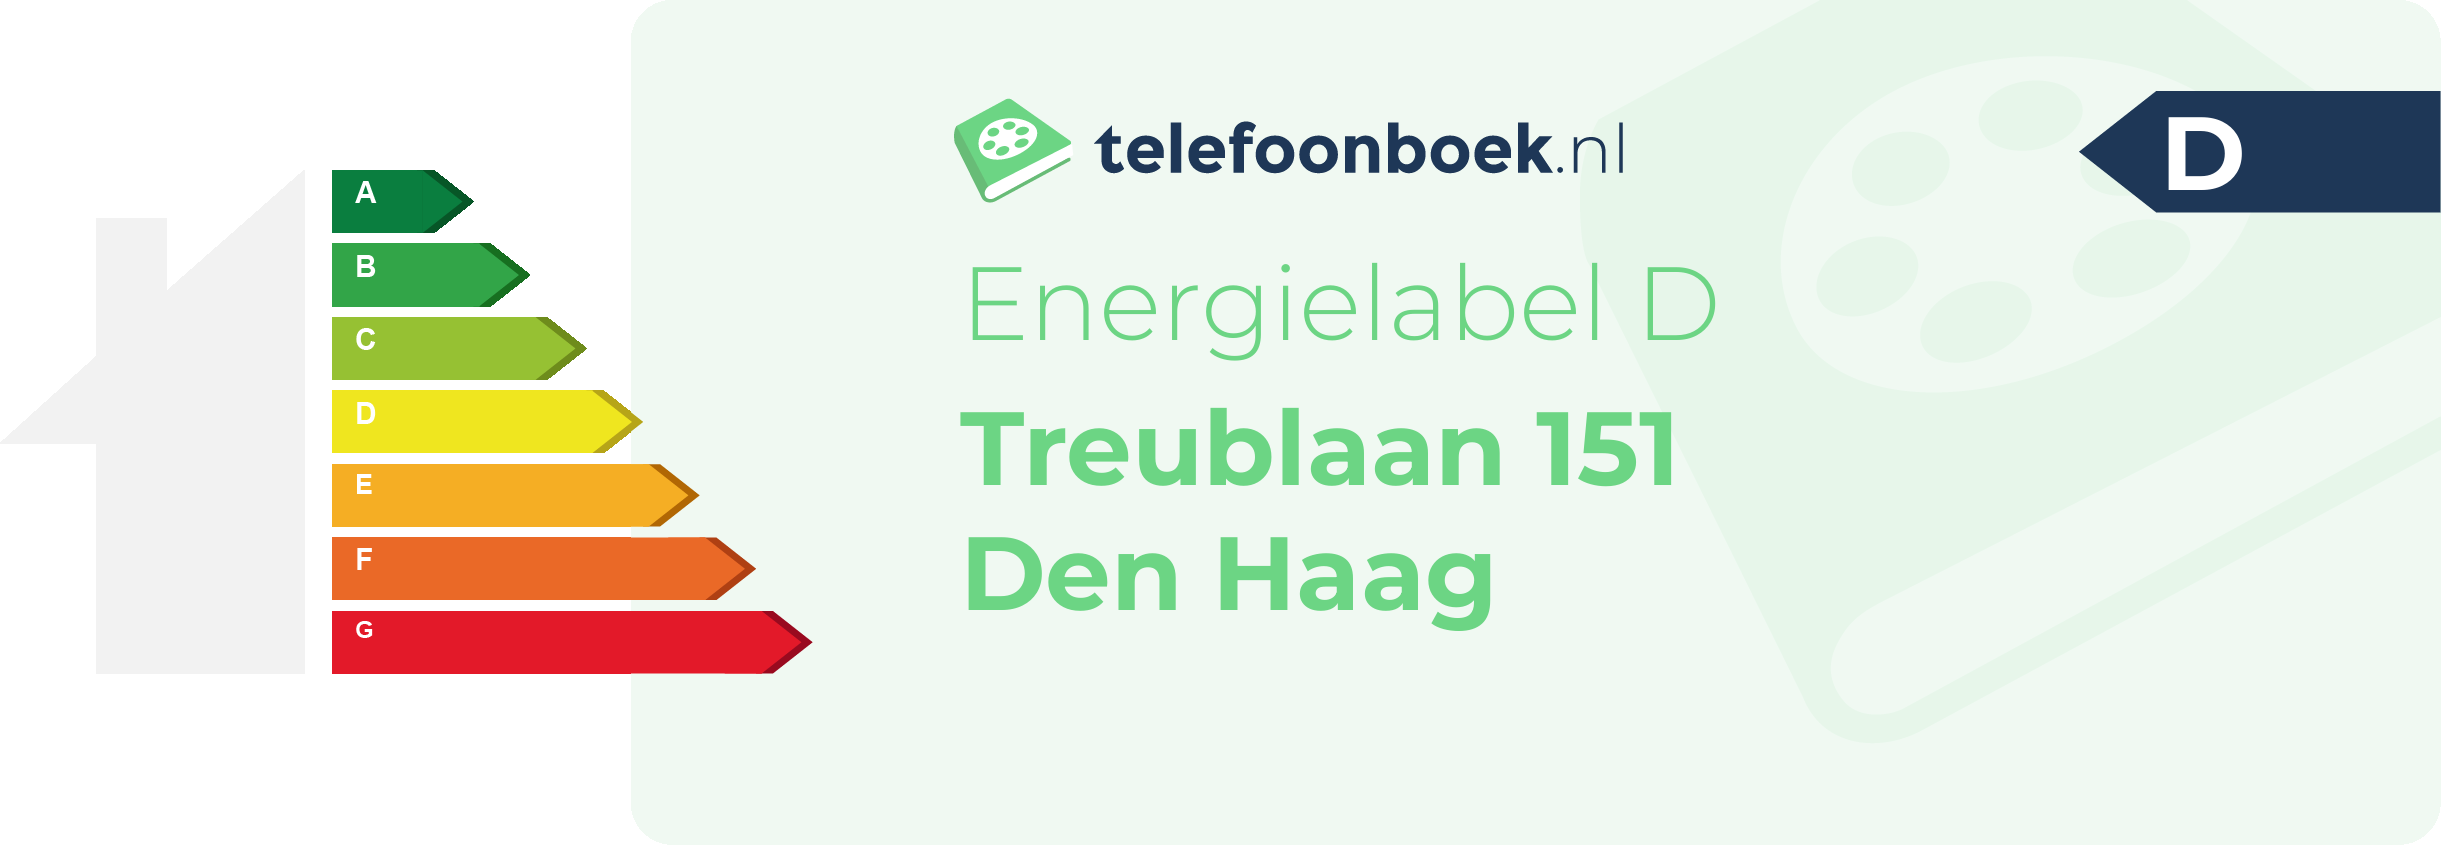 Energielabel Treublaan 151 Den Haag